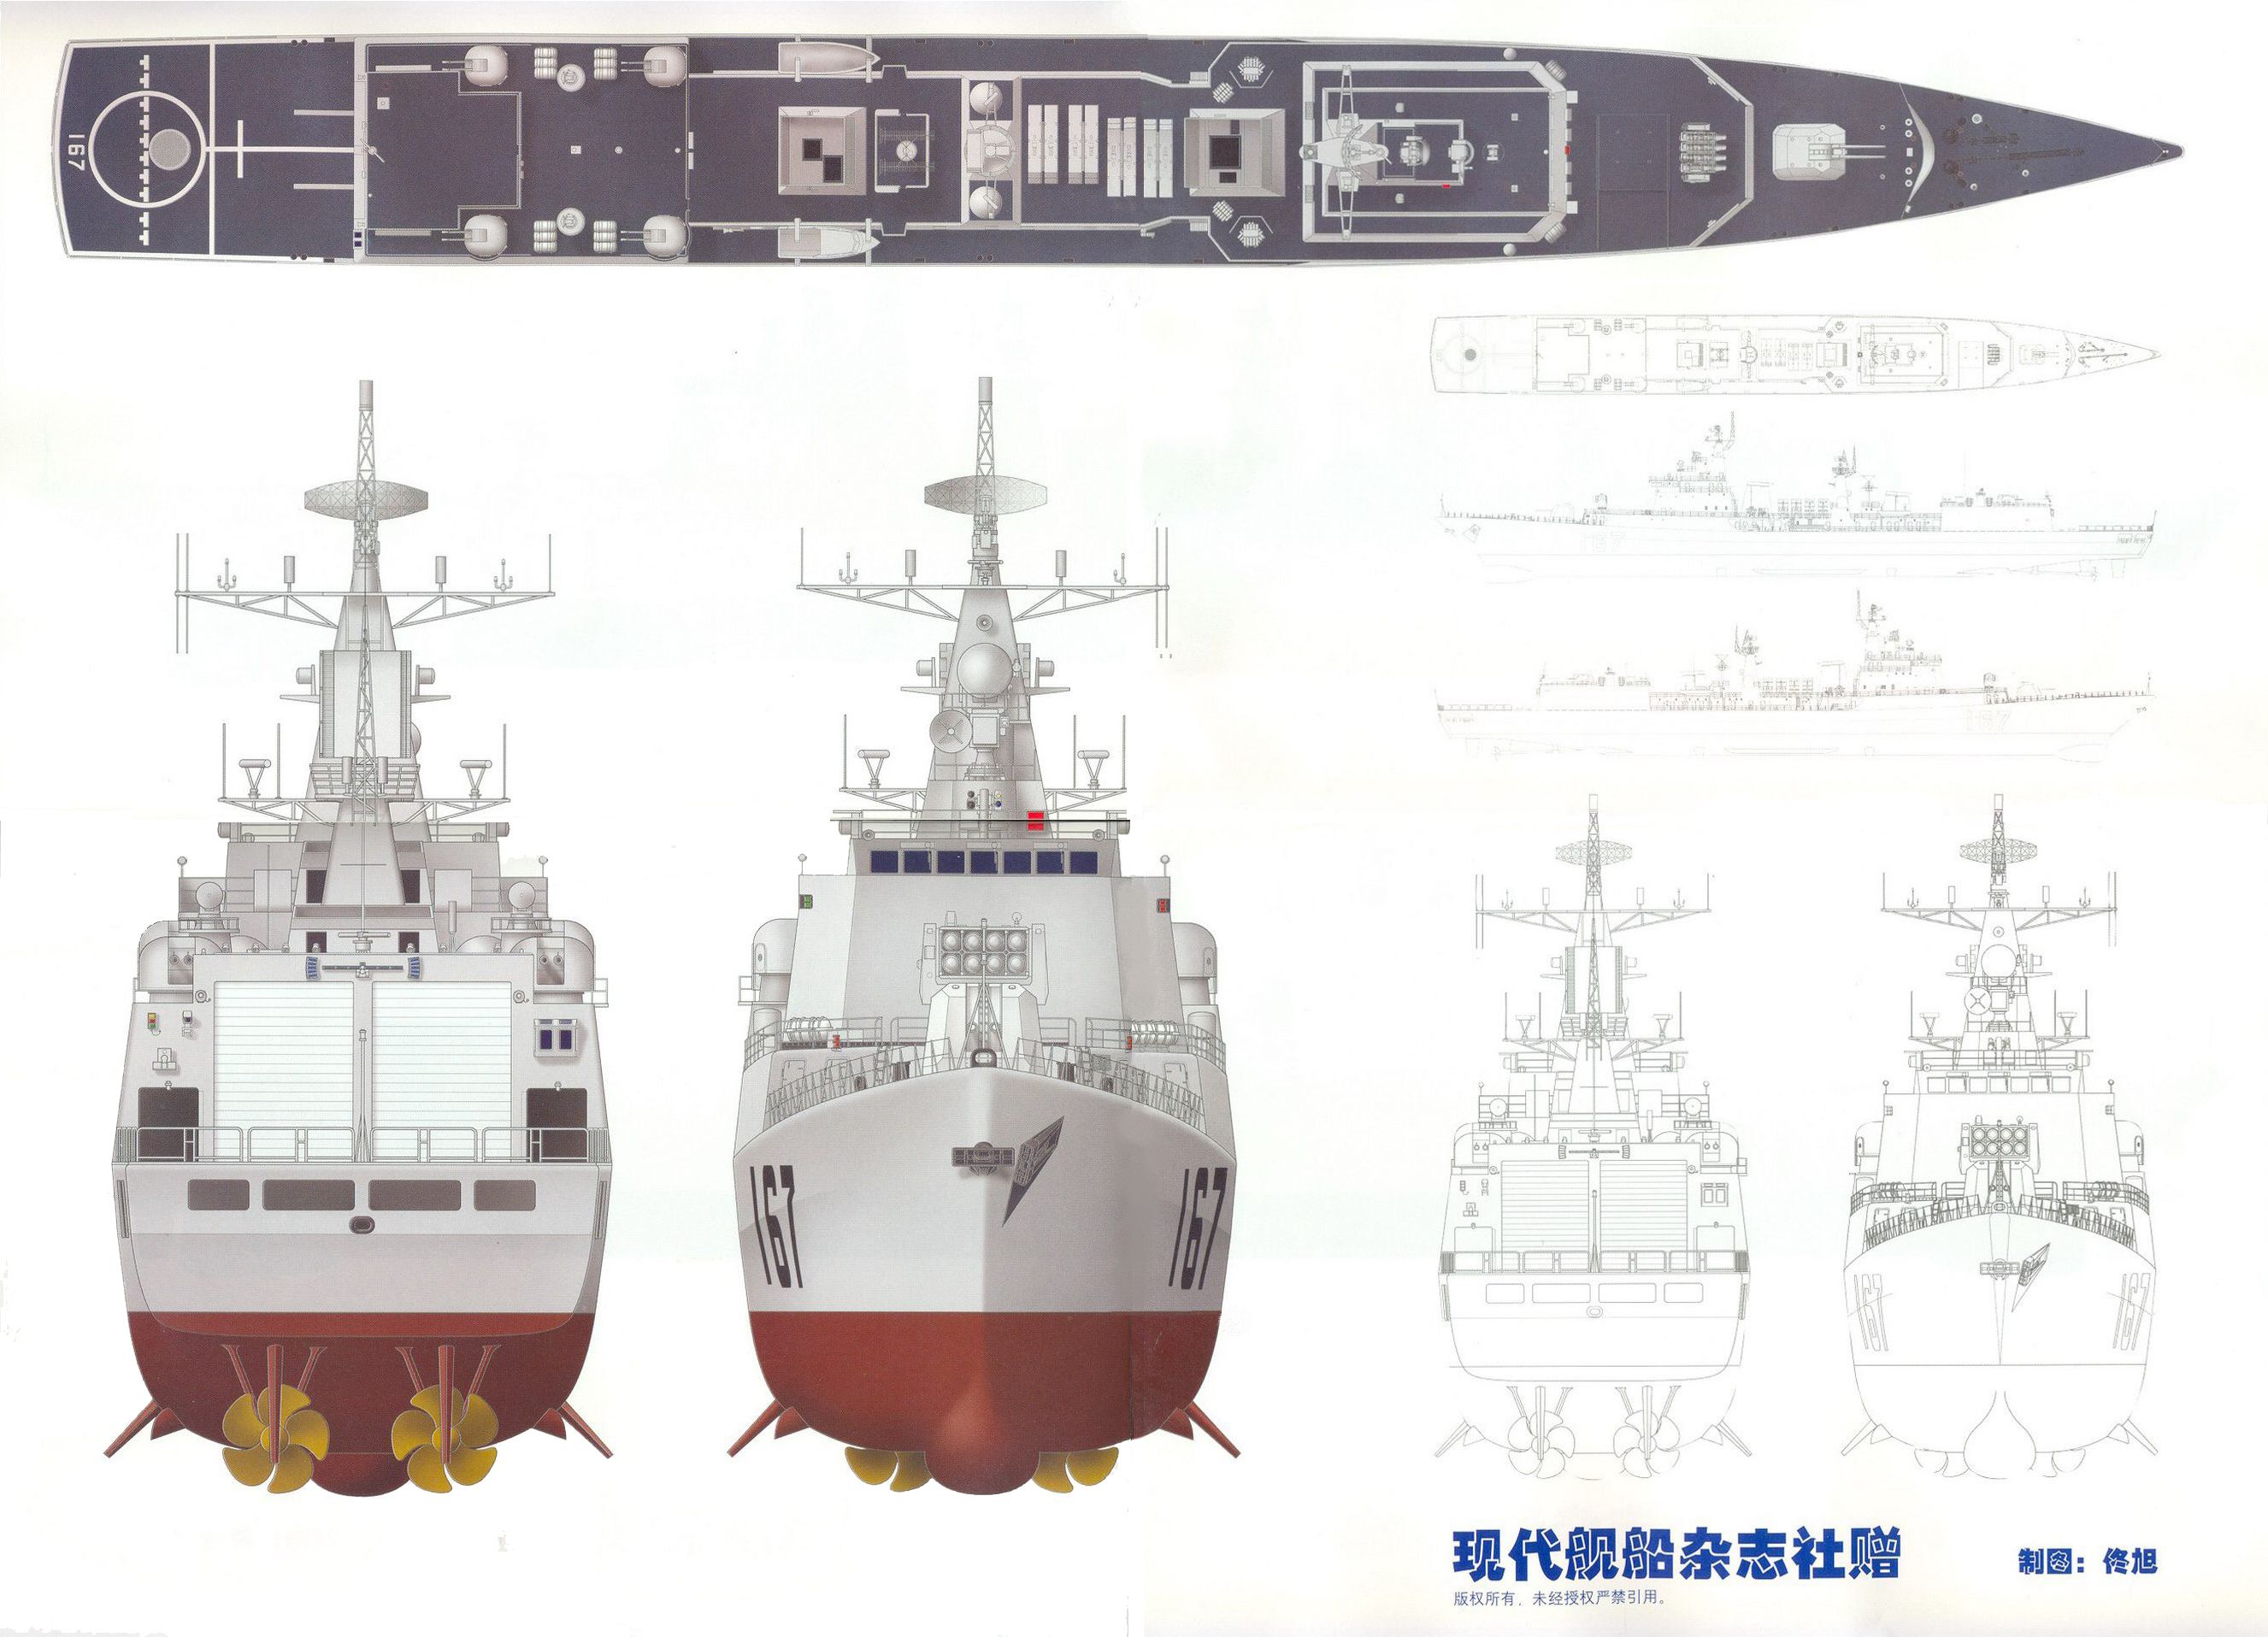 1706455372 984 Shenzhen DDG 167 Type 051B destroyer